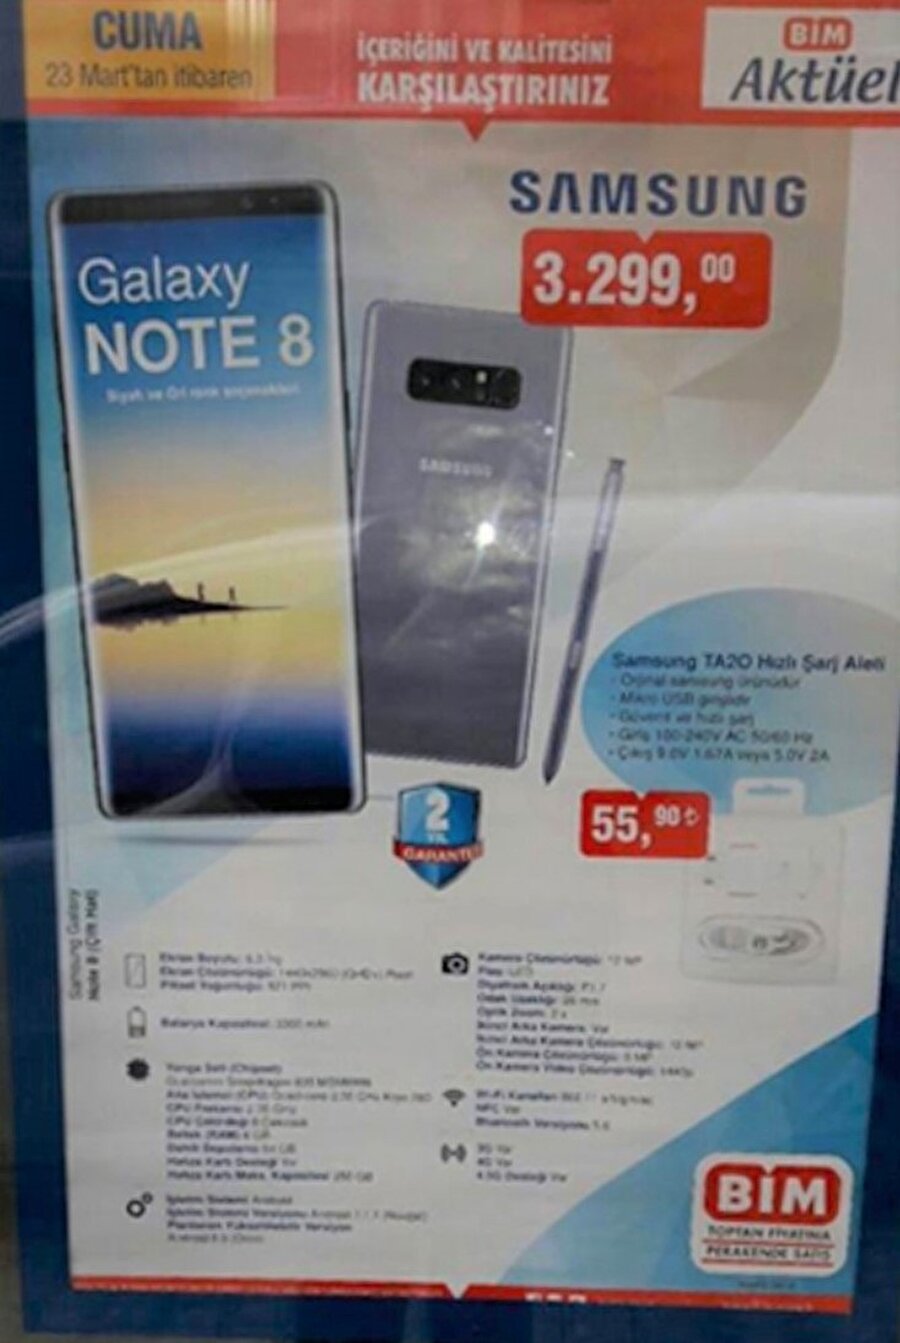 BİM, yeni kampanyasıyla birlikte Galaxy Note 8'i Samsung'dan 2200 TL daha indirimli satıyor. 